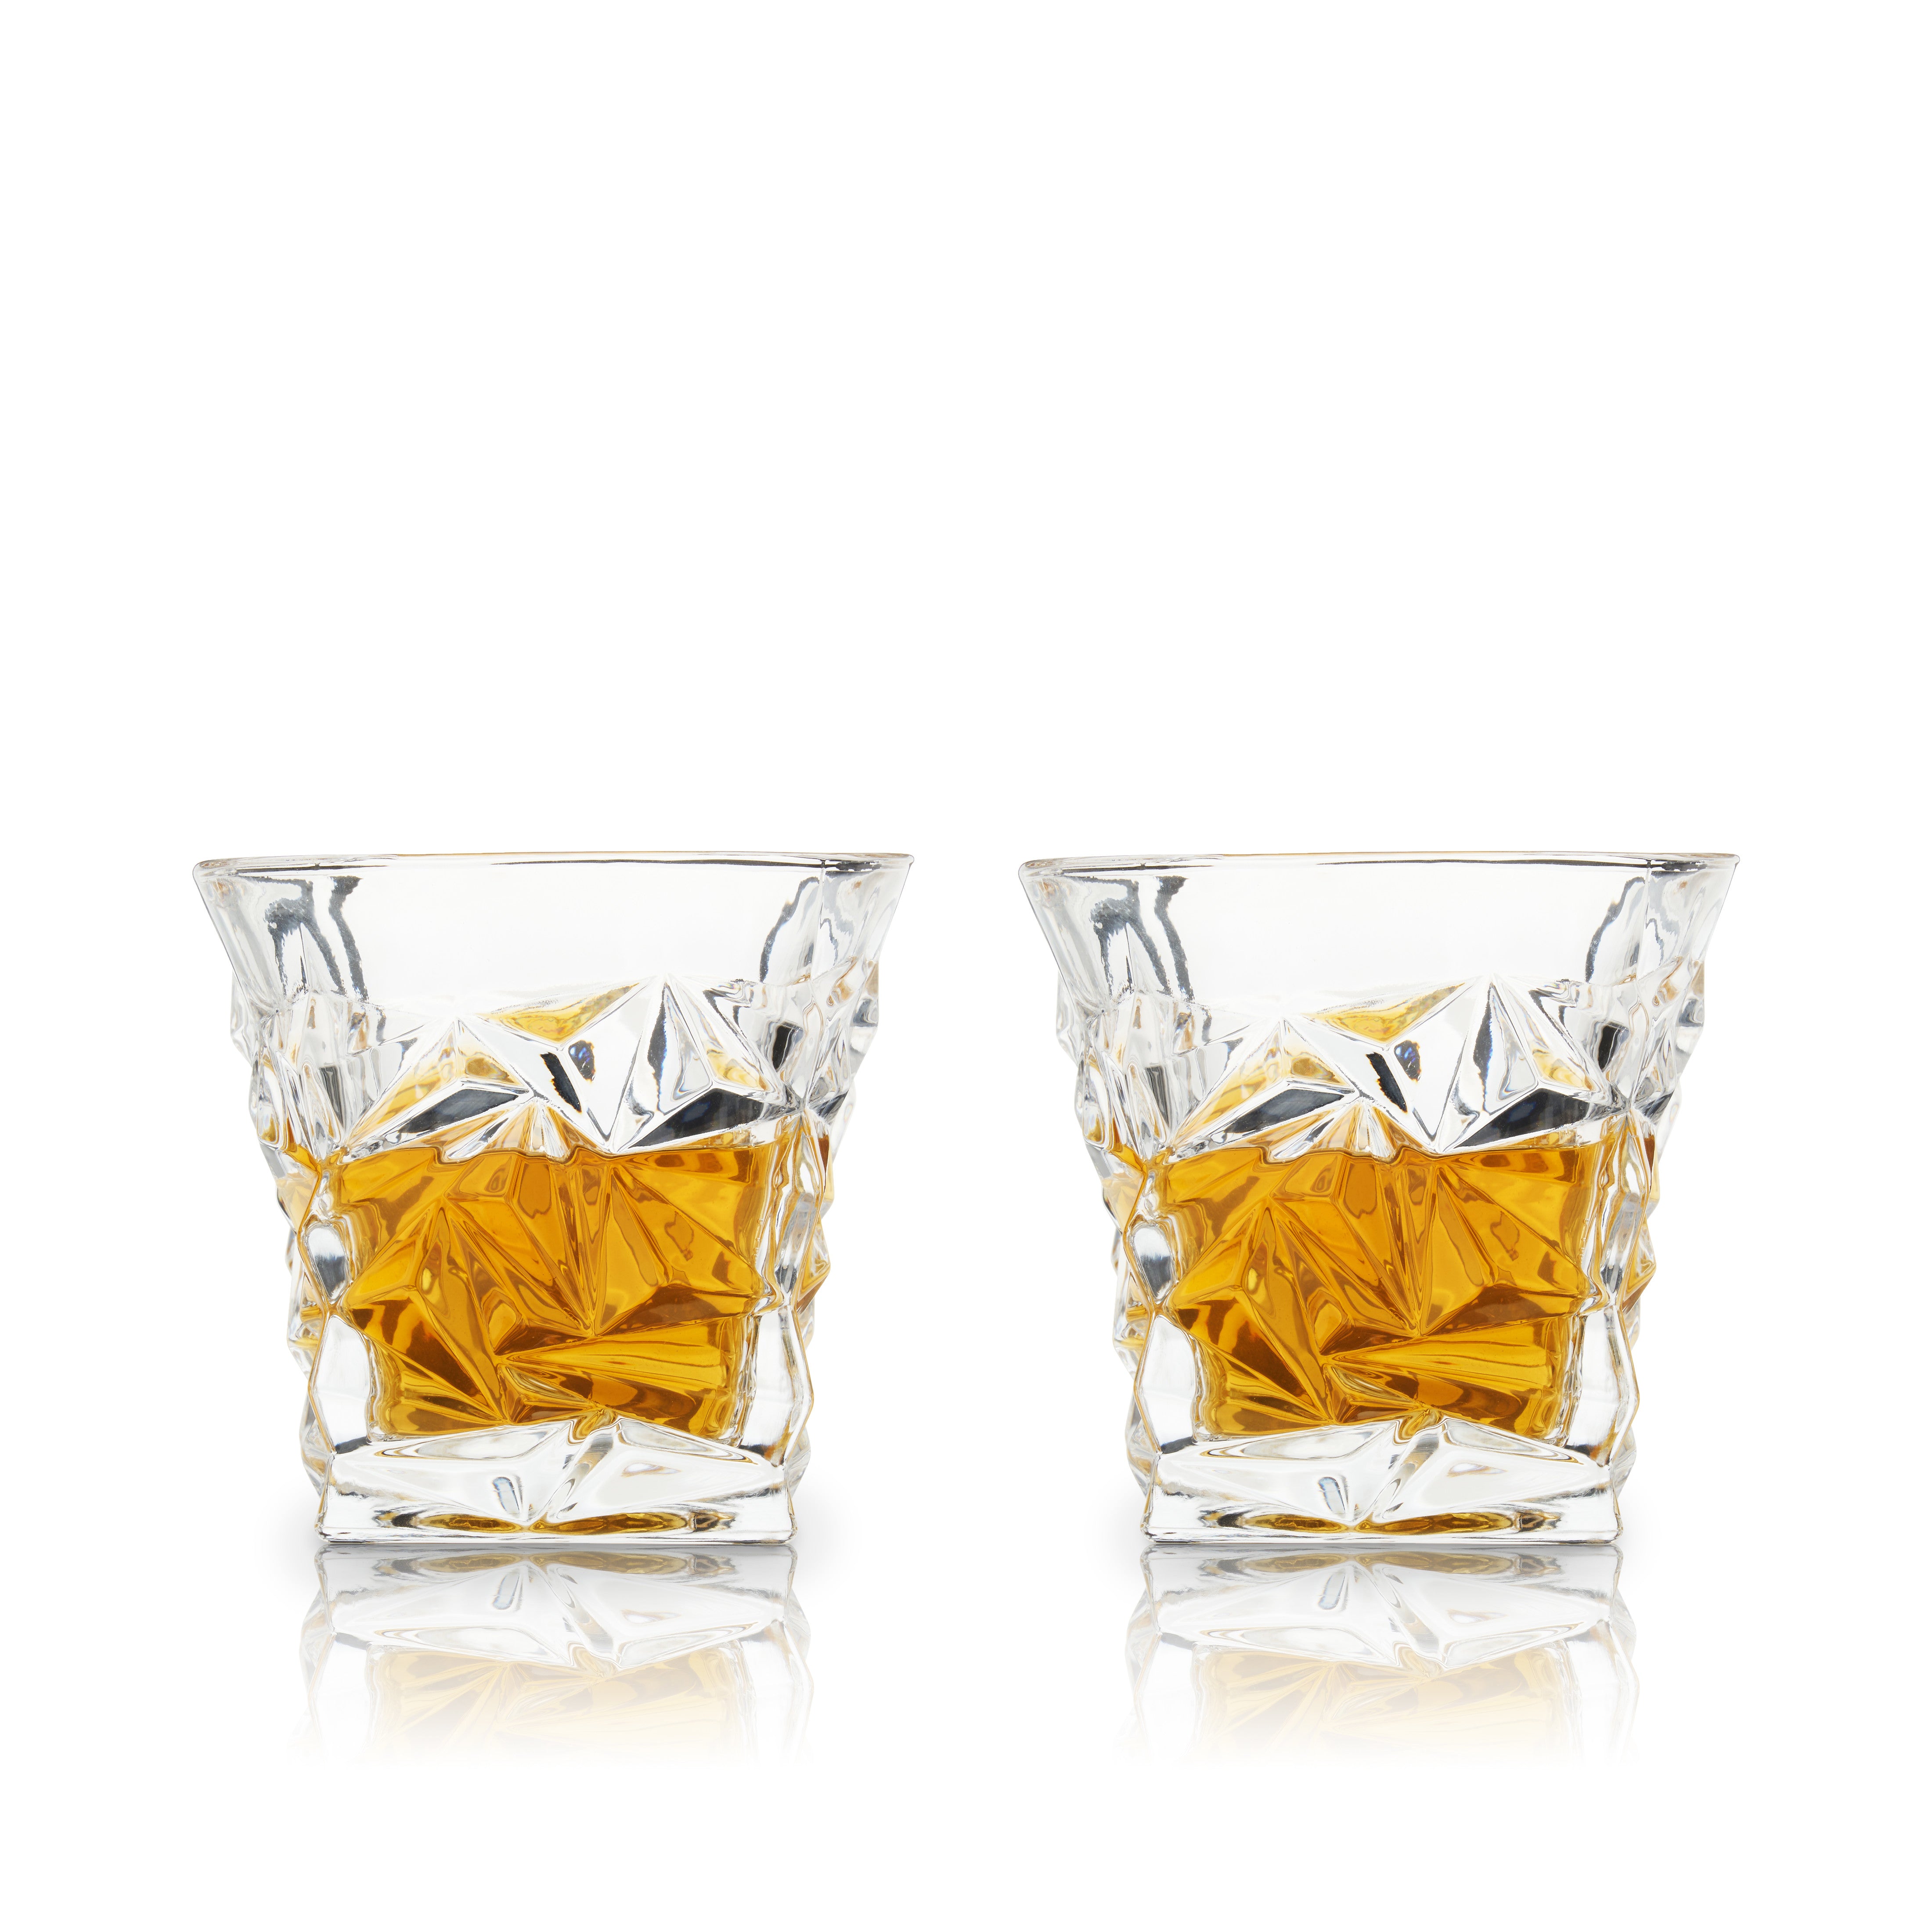 Whiskey Glass Set Of 2, Scotch Bourbon 10oz Crystal Whiskey